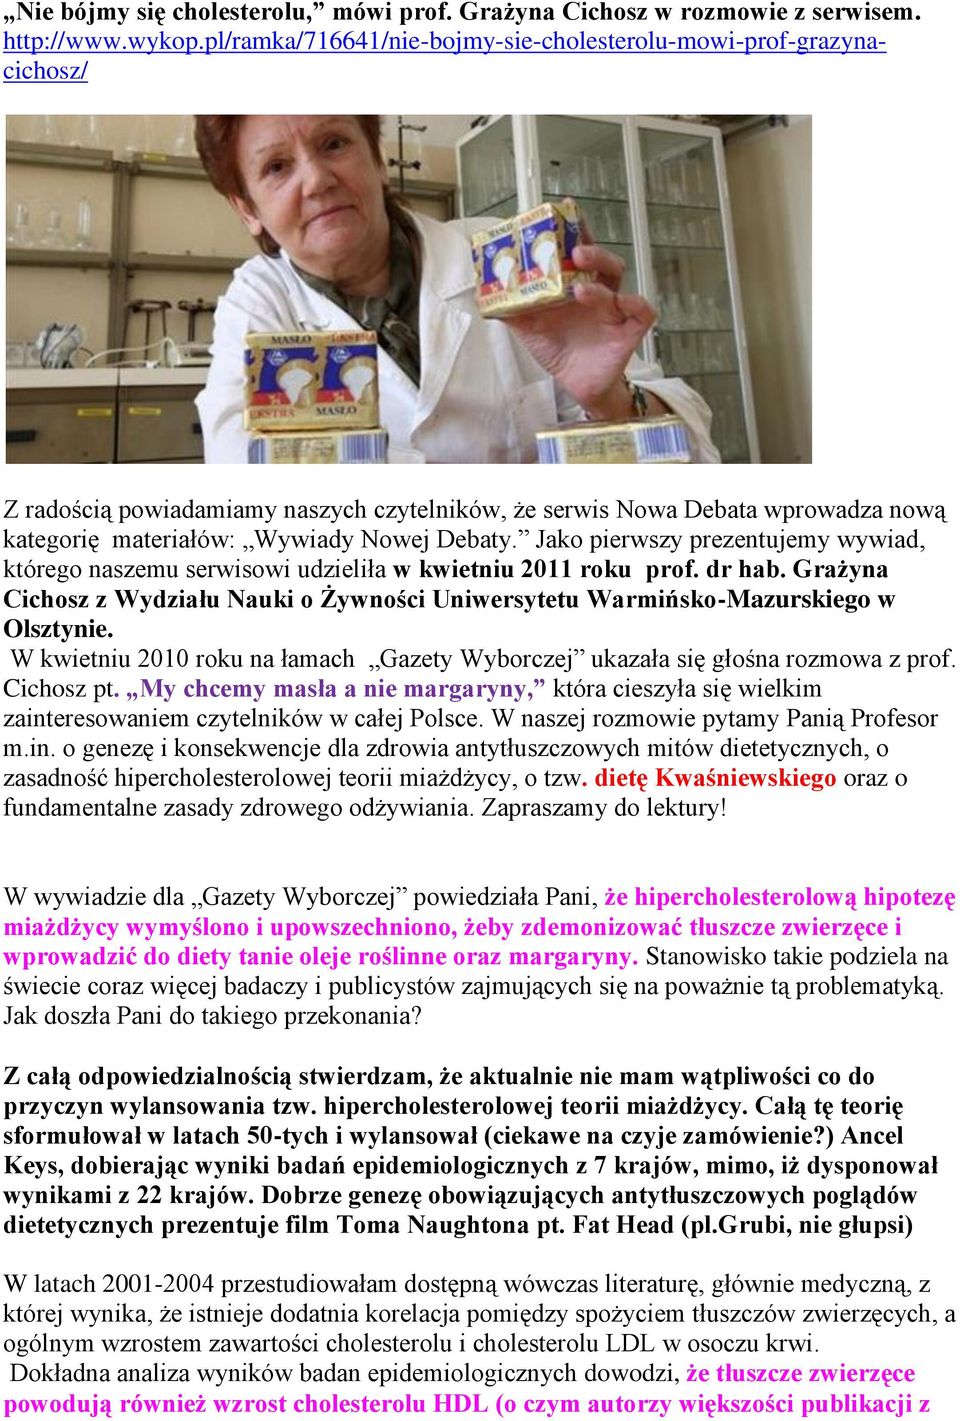 Jako pierwszy prezentujemy wywiad, którego naszemu serwisowi udzieliła w kwietniu 2011 roku prof. dr hab. Grażyna Cichosz z Wydziału Nauki o Żywności Uniwersytetu Warmińsko-Mazurskiego w Olsztynie.